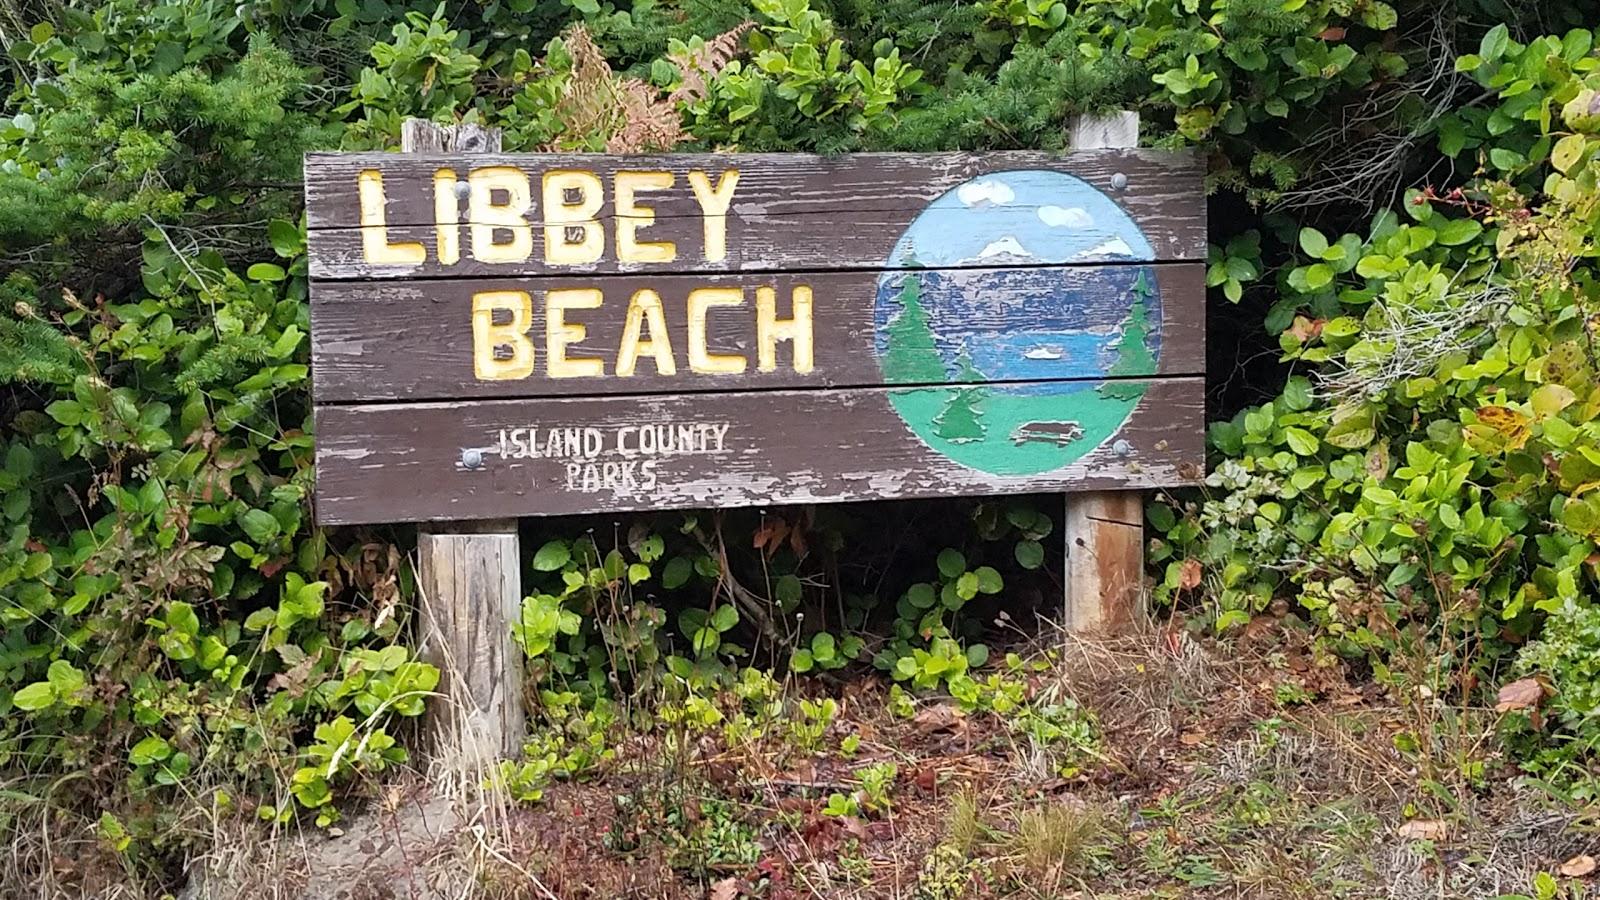 Sandee Libbey Beach County Park Photo